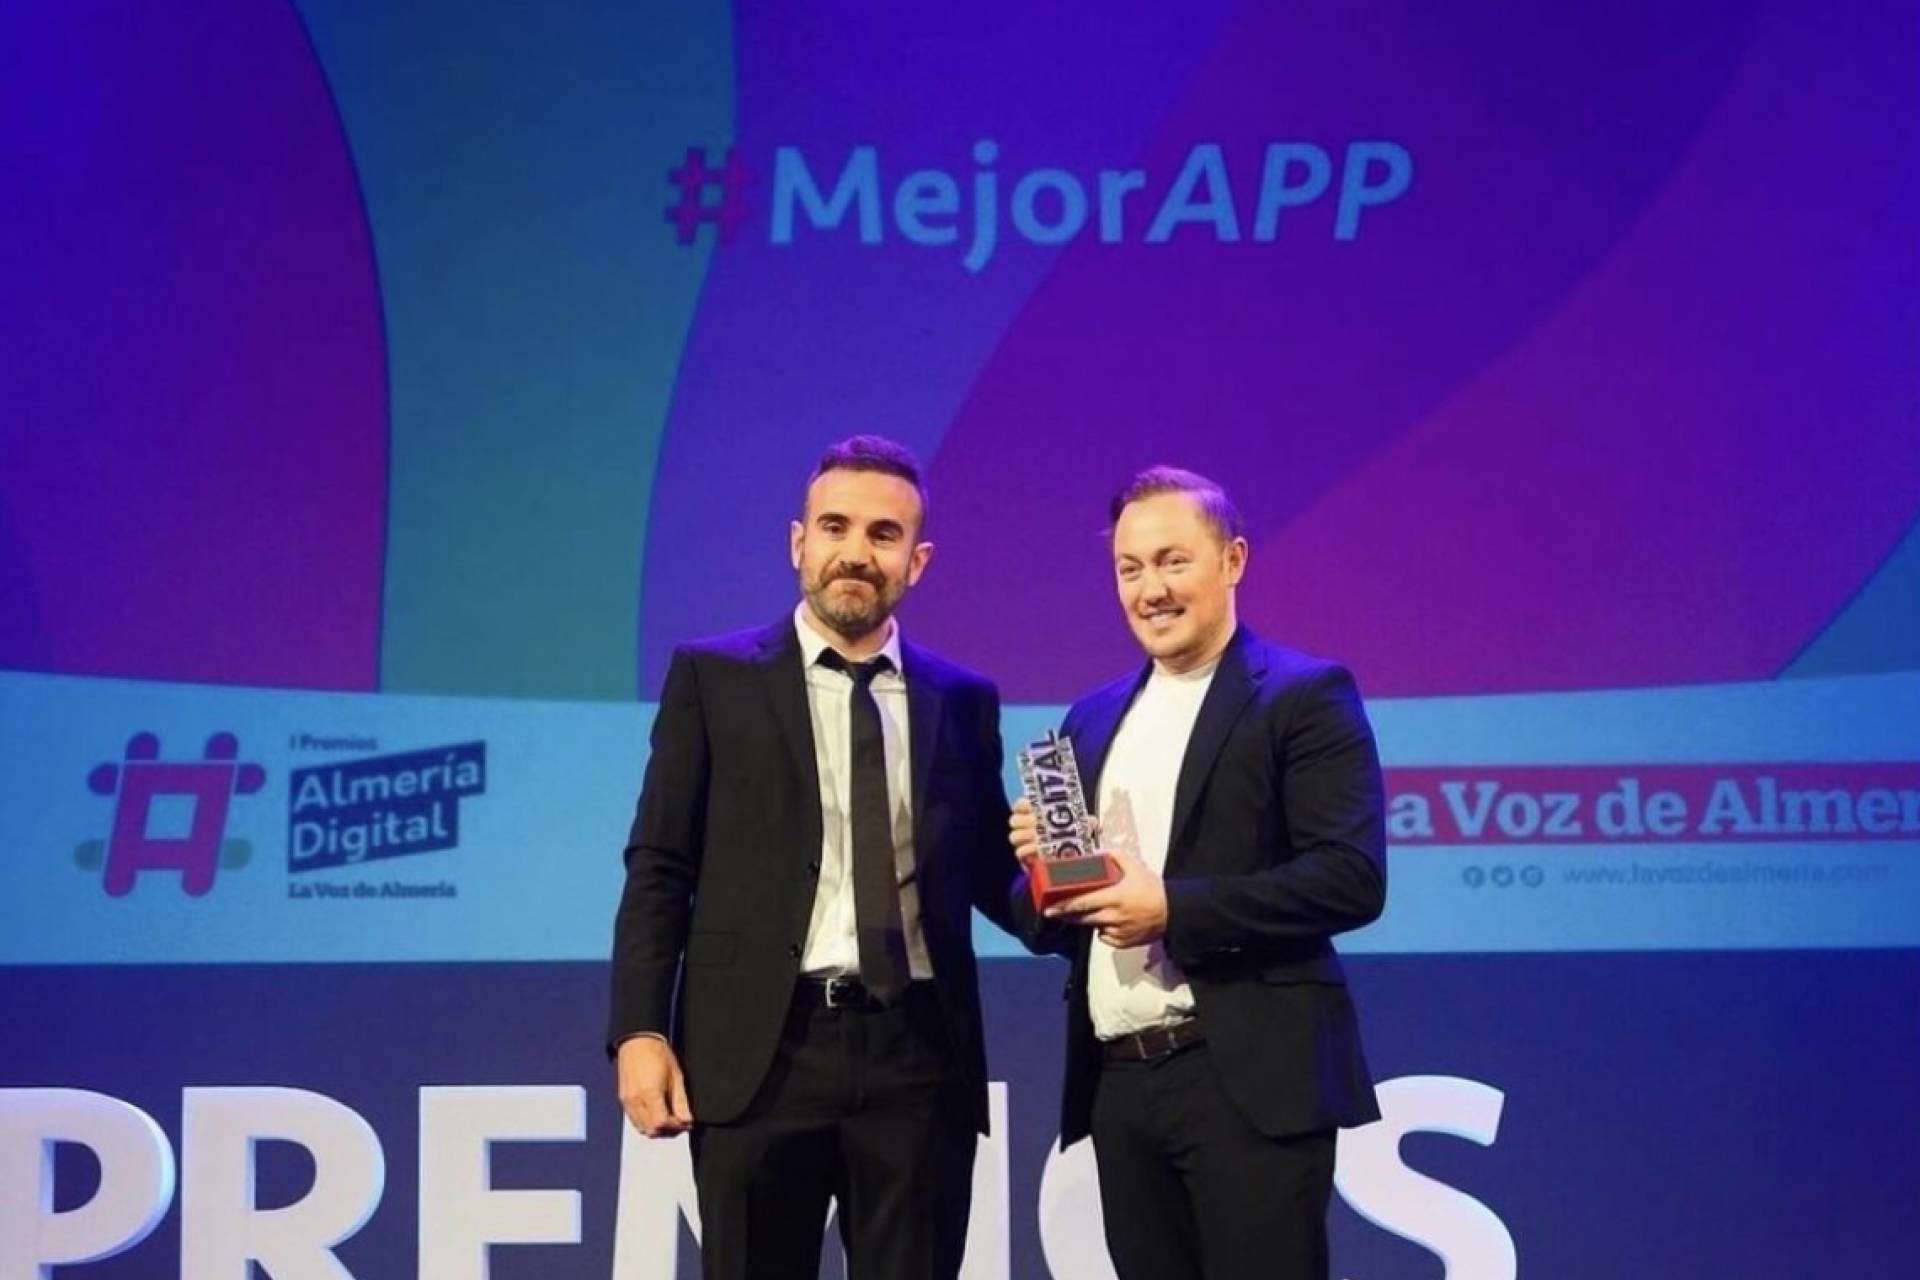 Trainingym recibe el premio a la mejor app en los Premios Almería Digital 2022